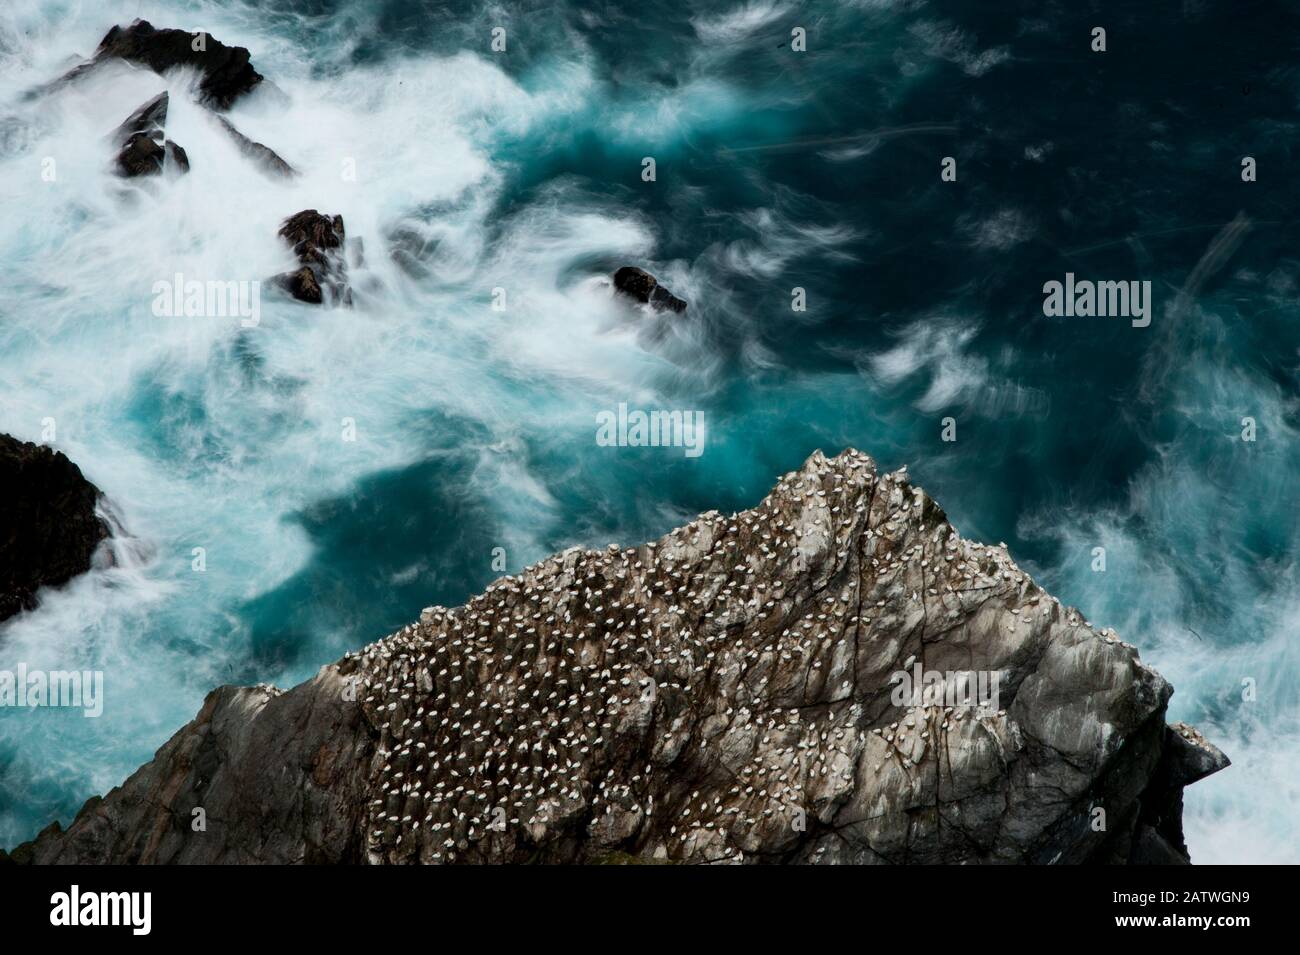 Vue aérienne des Gannets de nidification (Morus bassanus) et des mers nageantes, de l'Hermaness, du Shetland, de l'Écosse, du Royaume-Uni, octobre. Banque D'Images